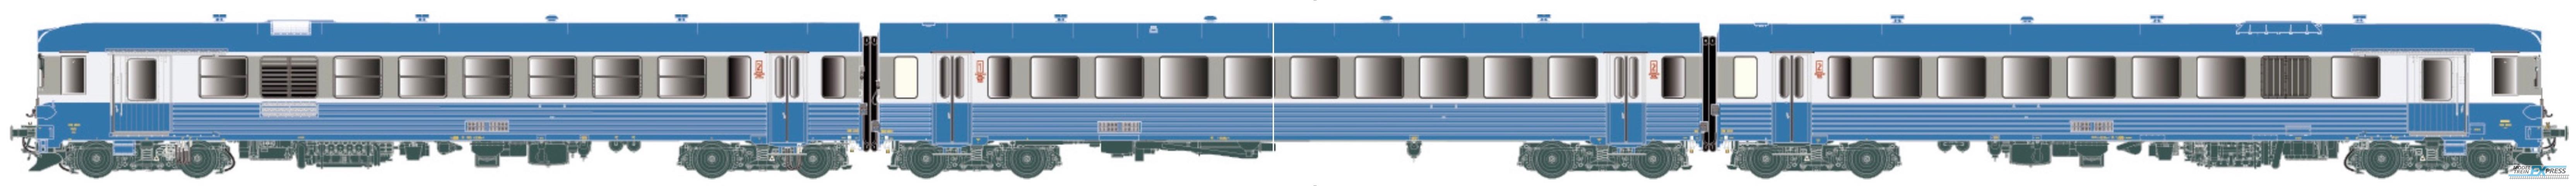 LS Models 11527 XBD4901-26 + XRAB8901-13, dieseltreinstel, 3-delig, met baanruimer / Ep. IV / SNCF / HO / AC / 1 P.